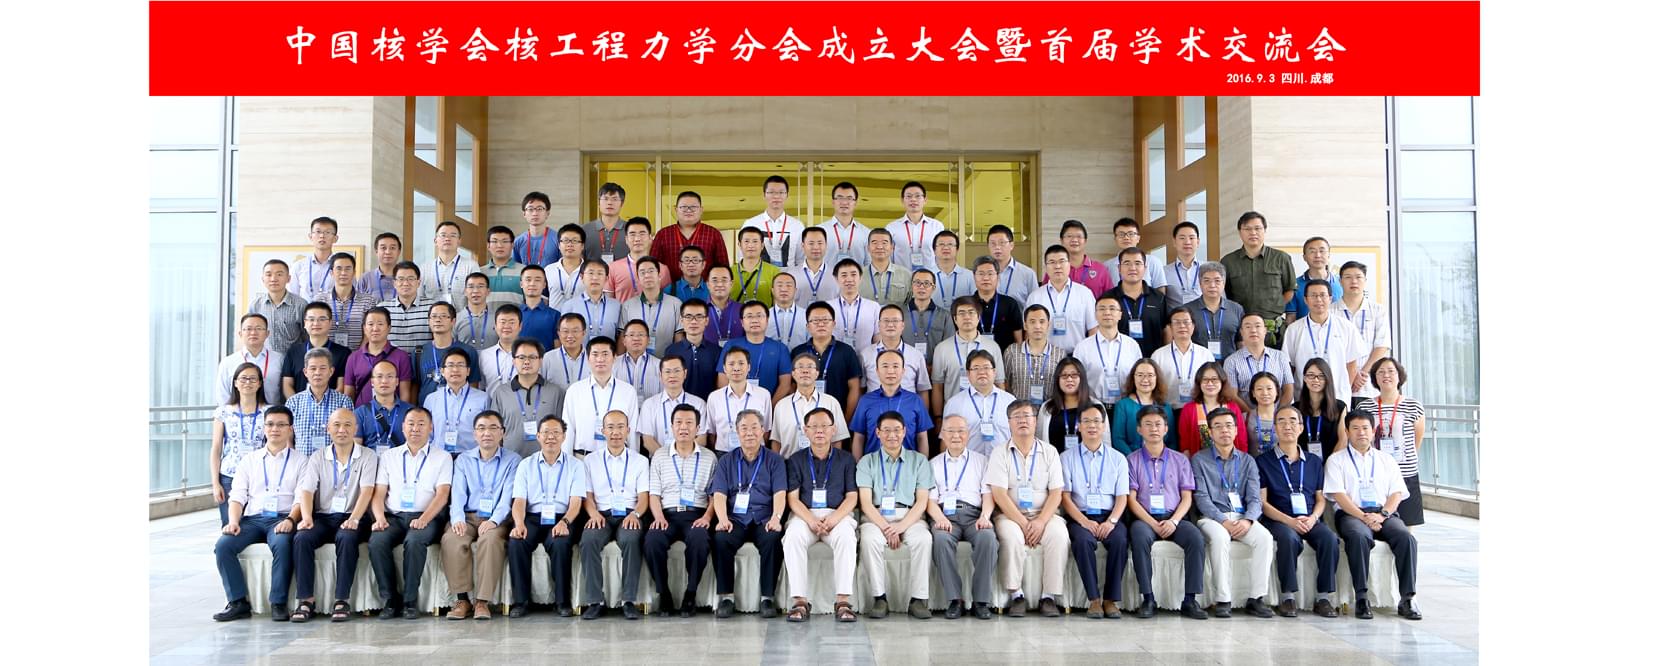 中国核工程力学分会成立大会会议合影